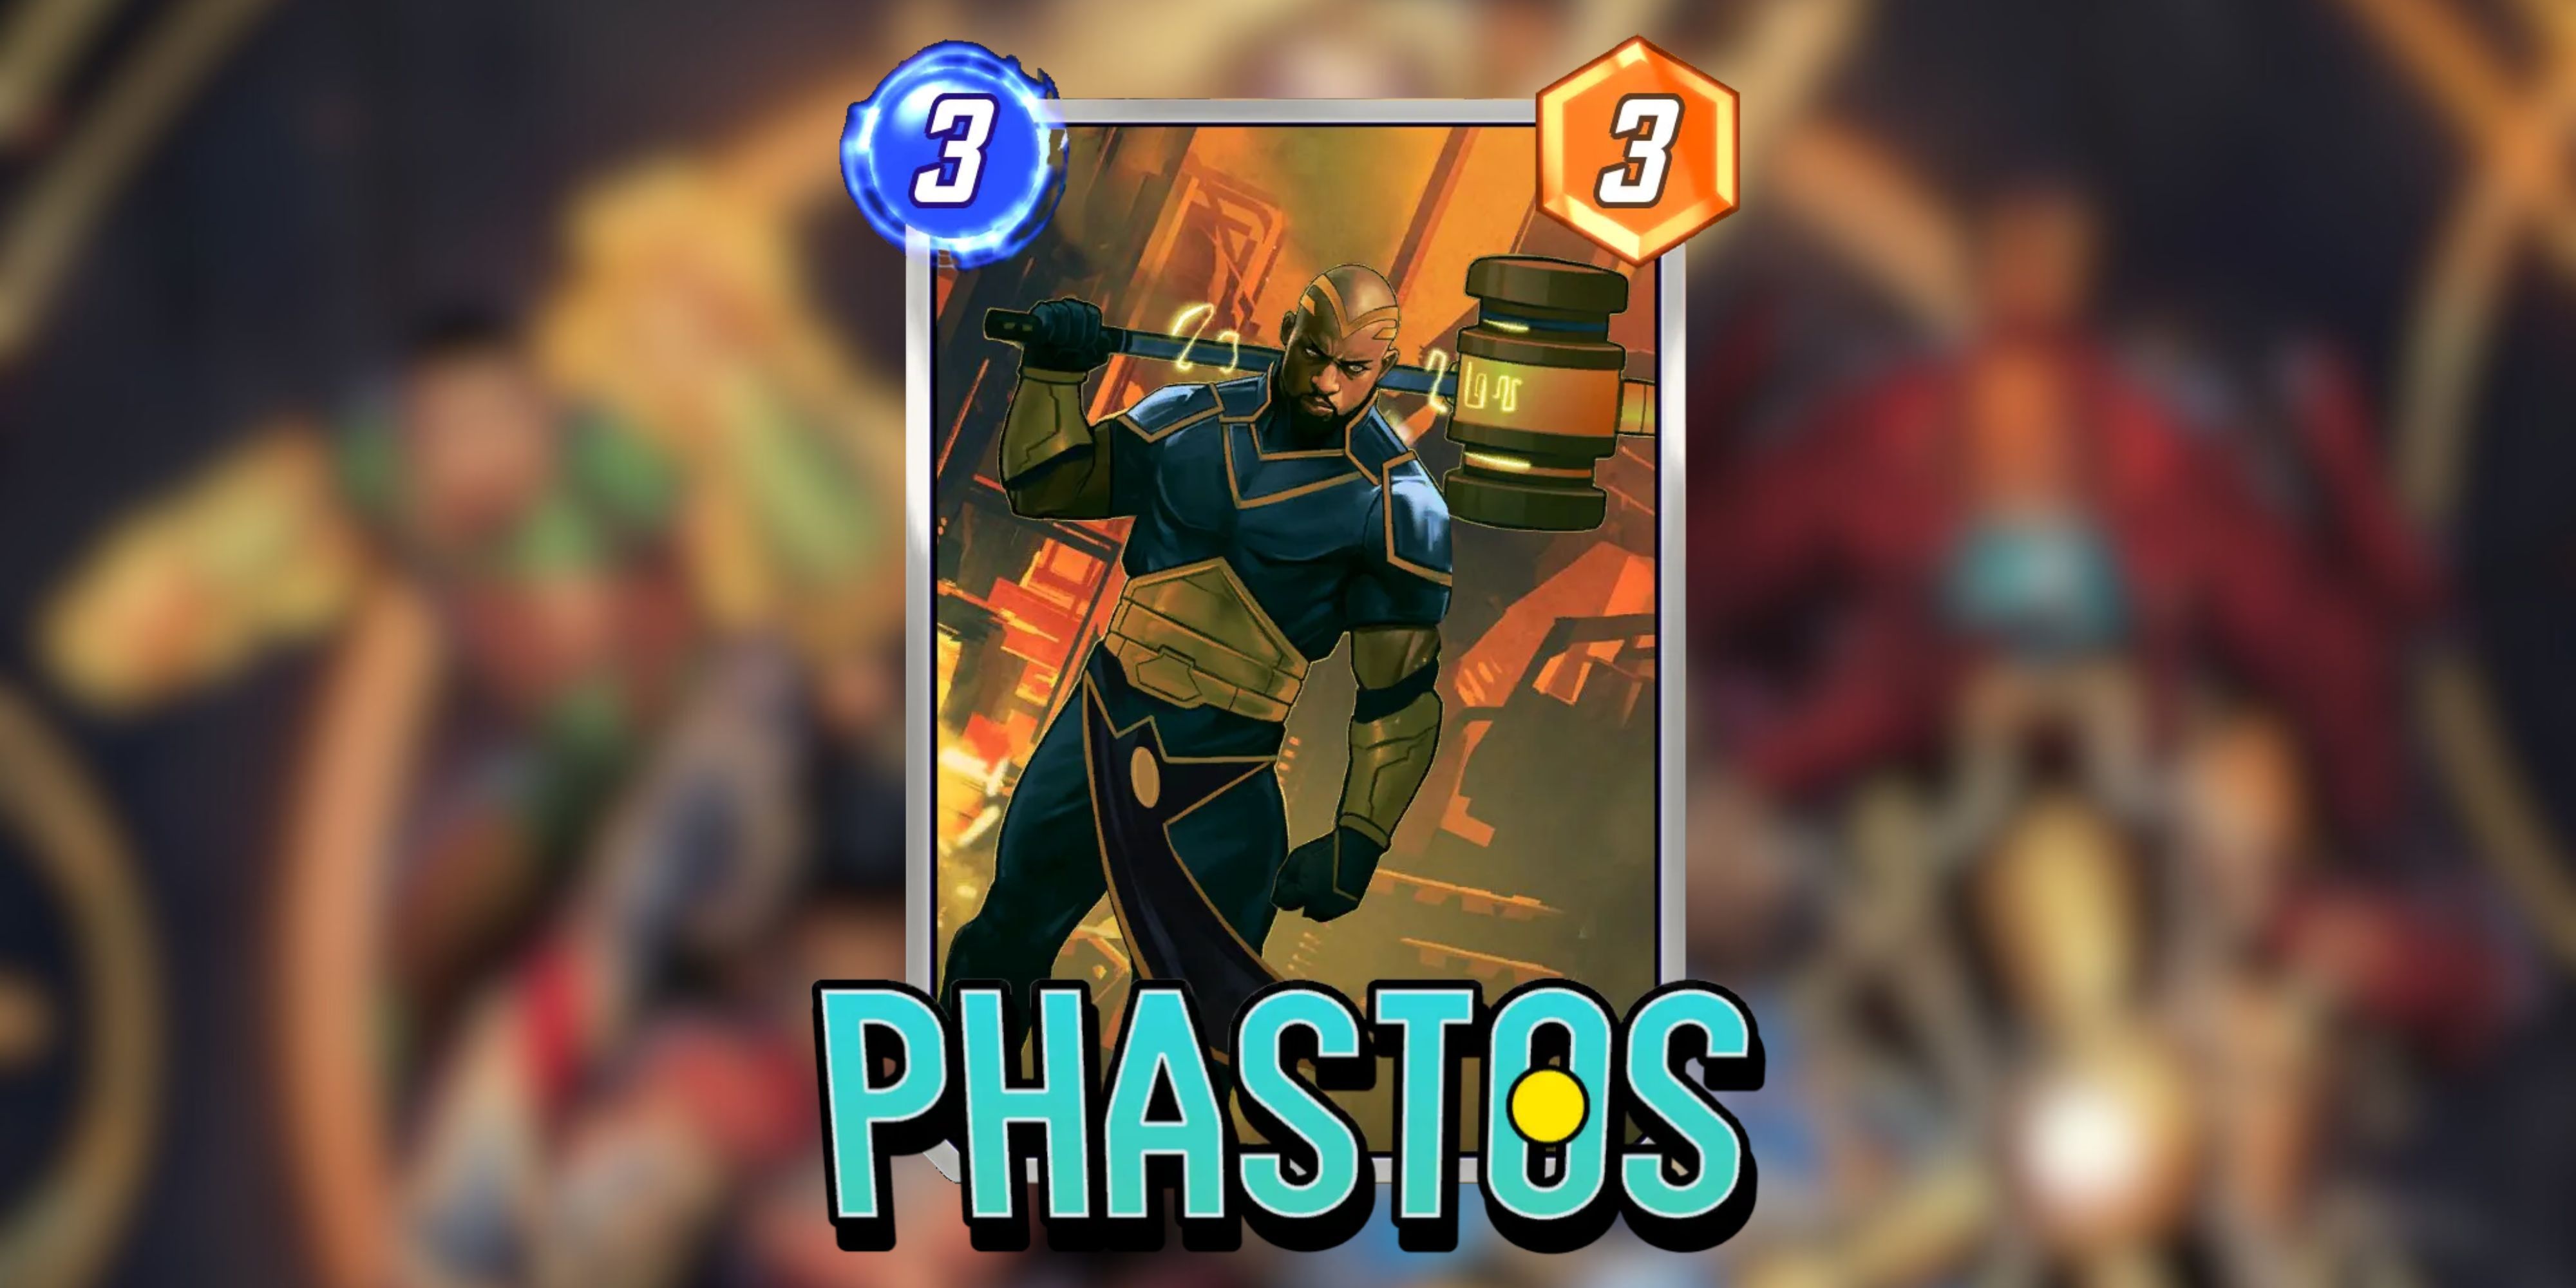 phastos card variant in marvel snap.